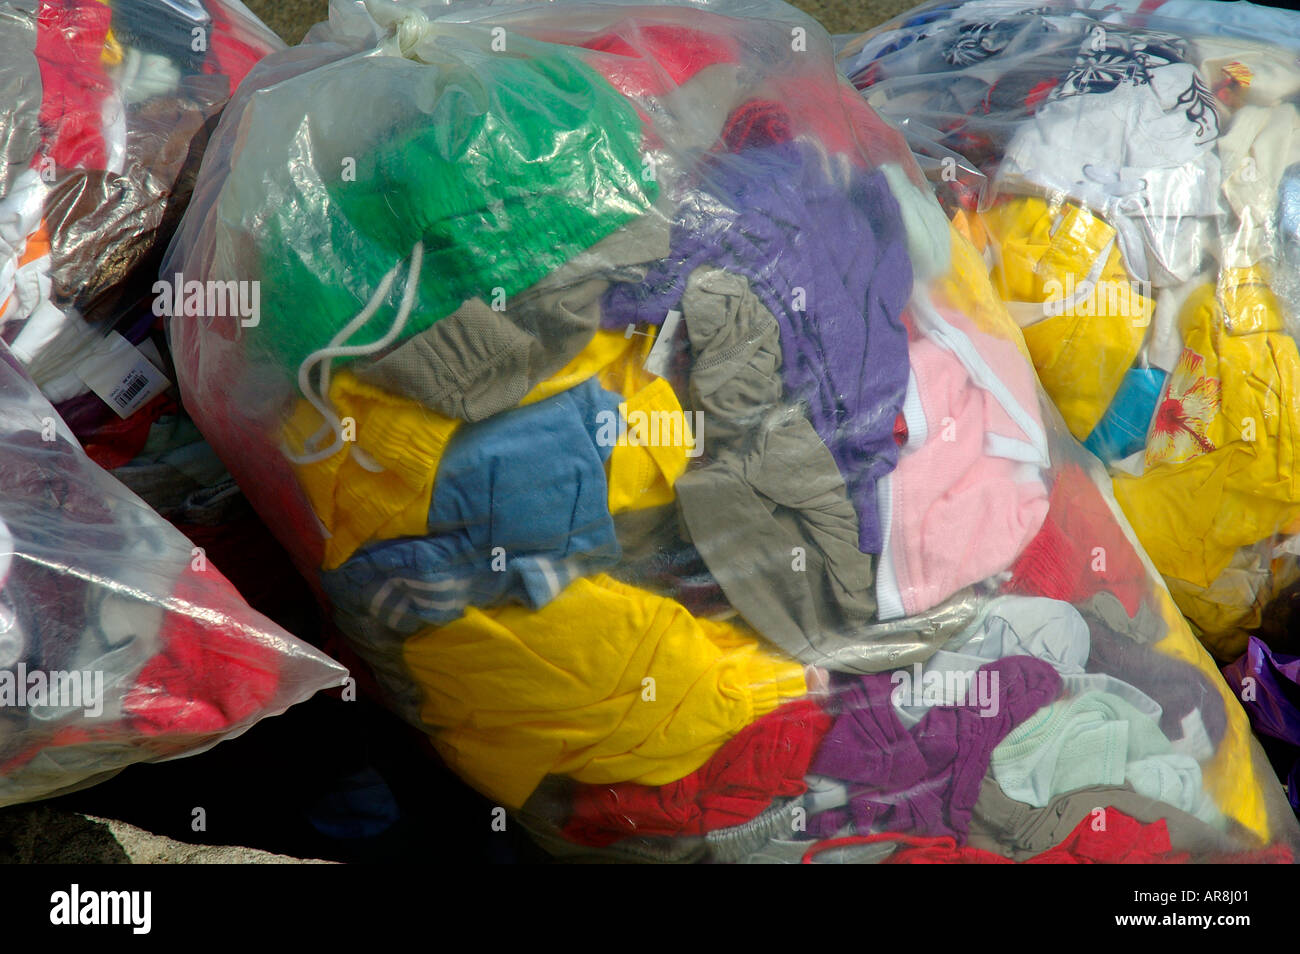 La ropa en bolsas de plástico Fotografía de stock -